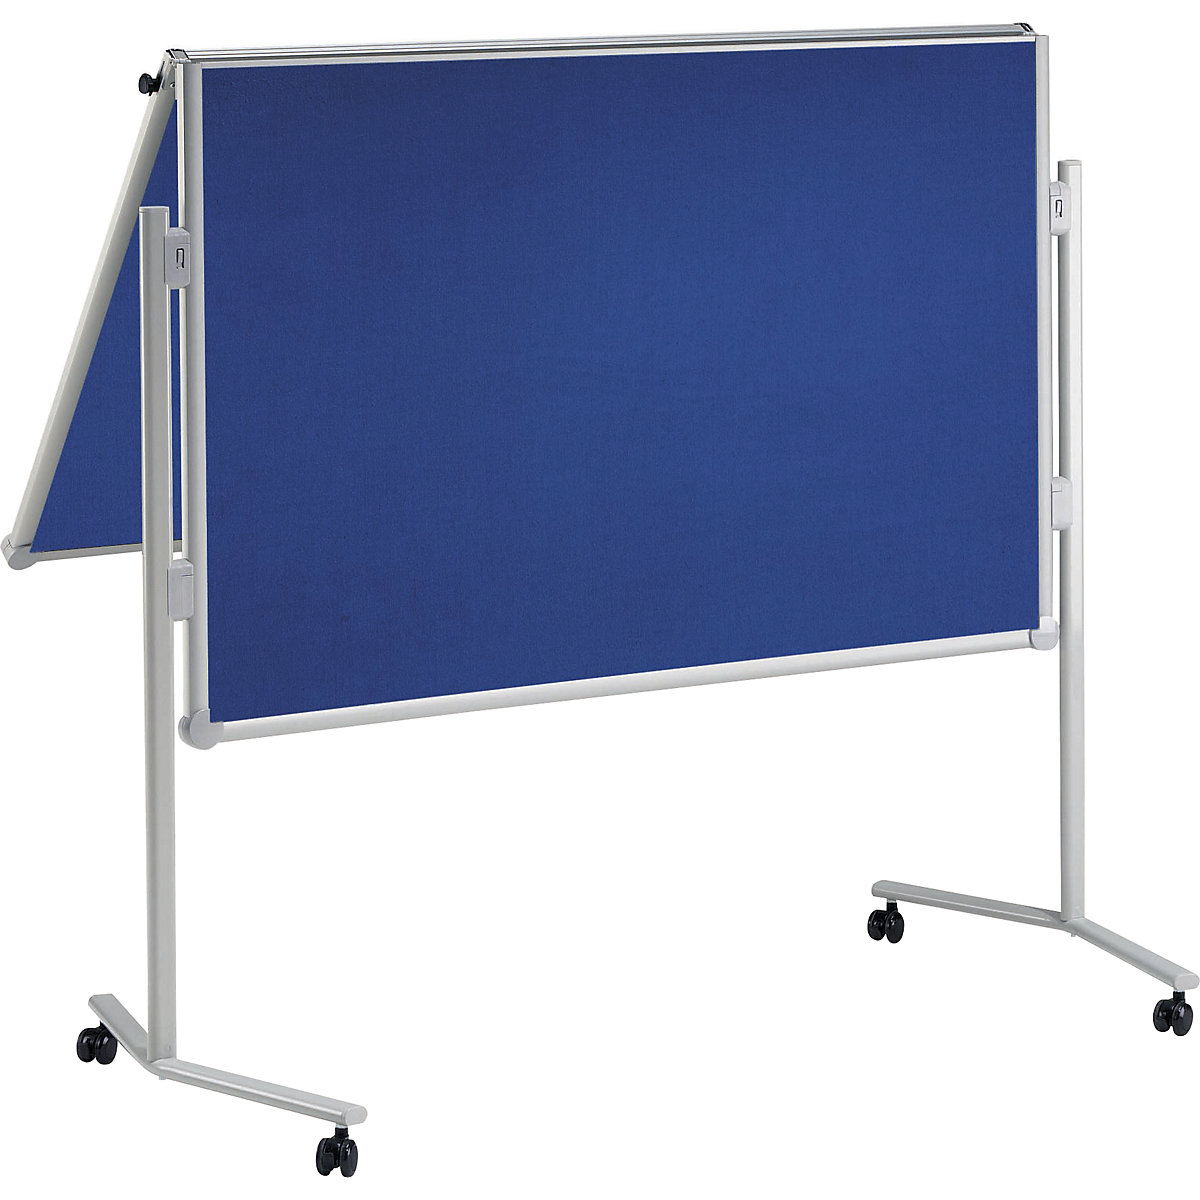 Moderationstafel MAULpro, klappbar MAUL, Textil-Oberfläche, blau, BxH 1200 x 1500 mm-8